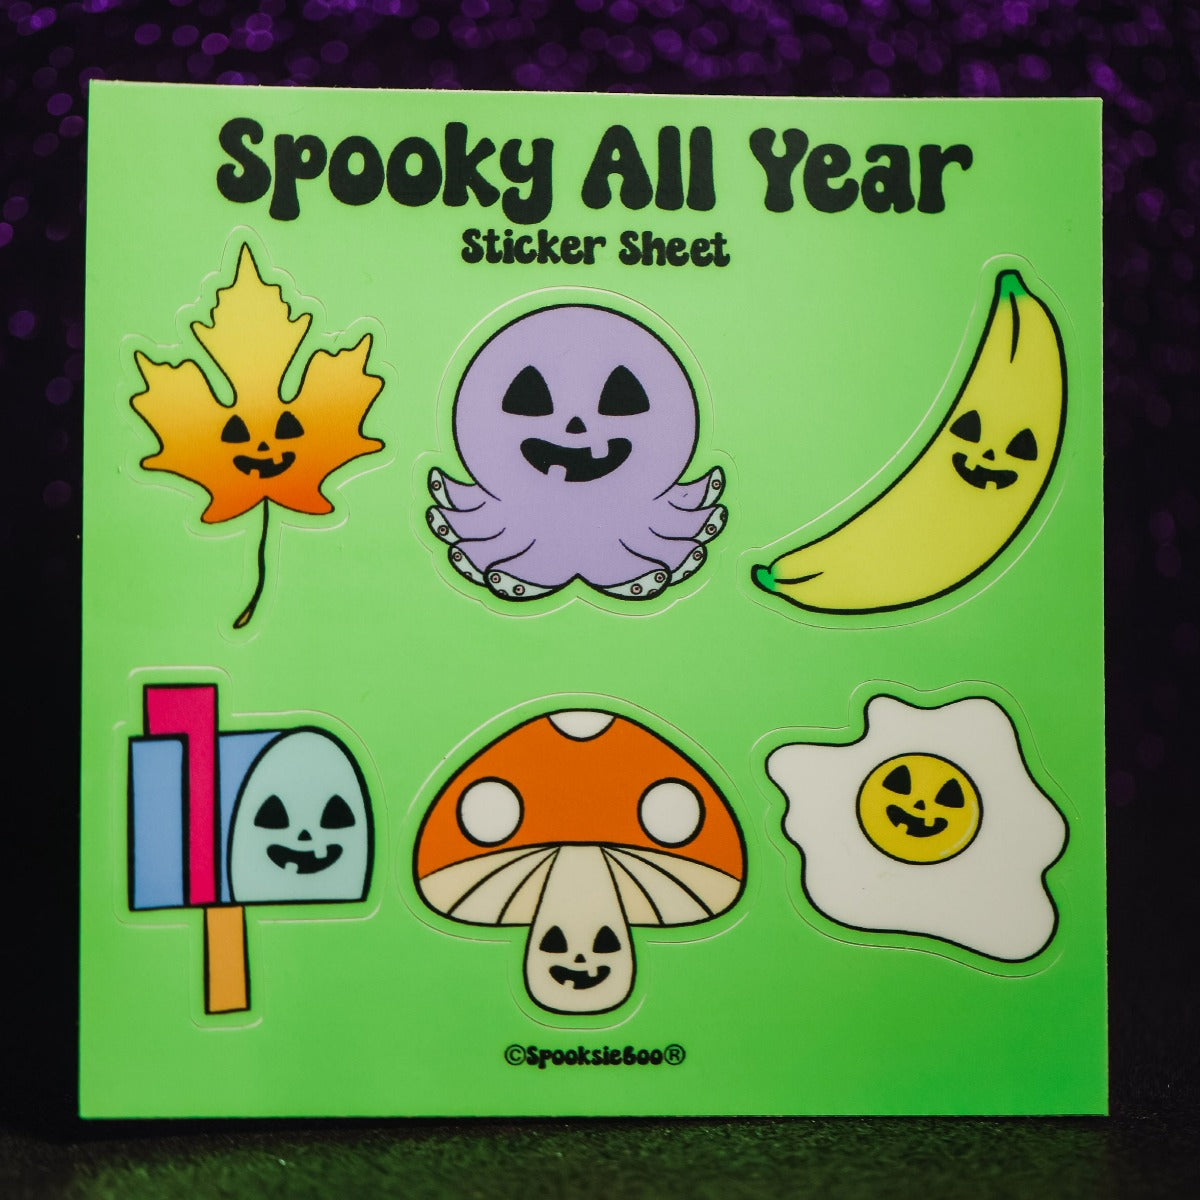 Spooky All Year - Sticker Sheet